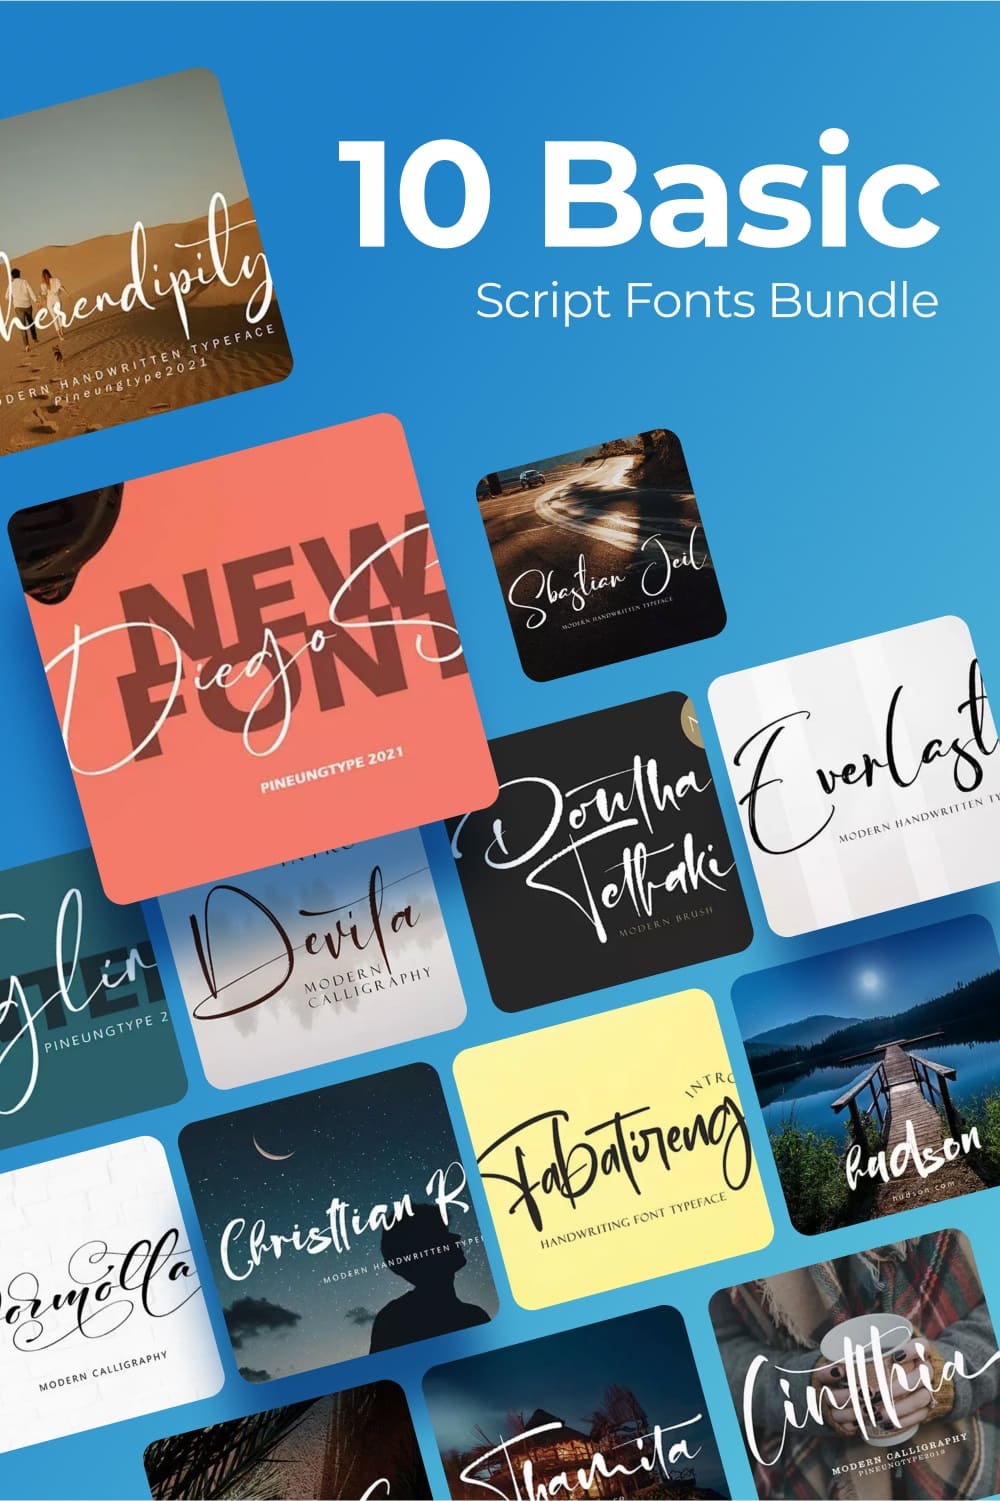 Basic script fonts bundle Pinterest preview.